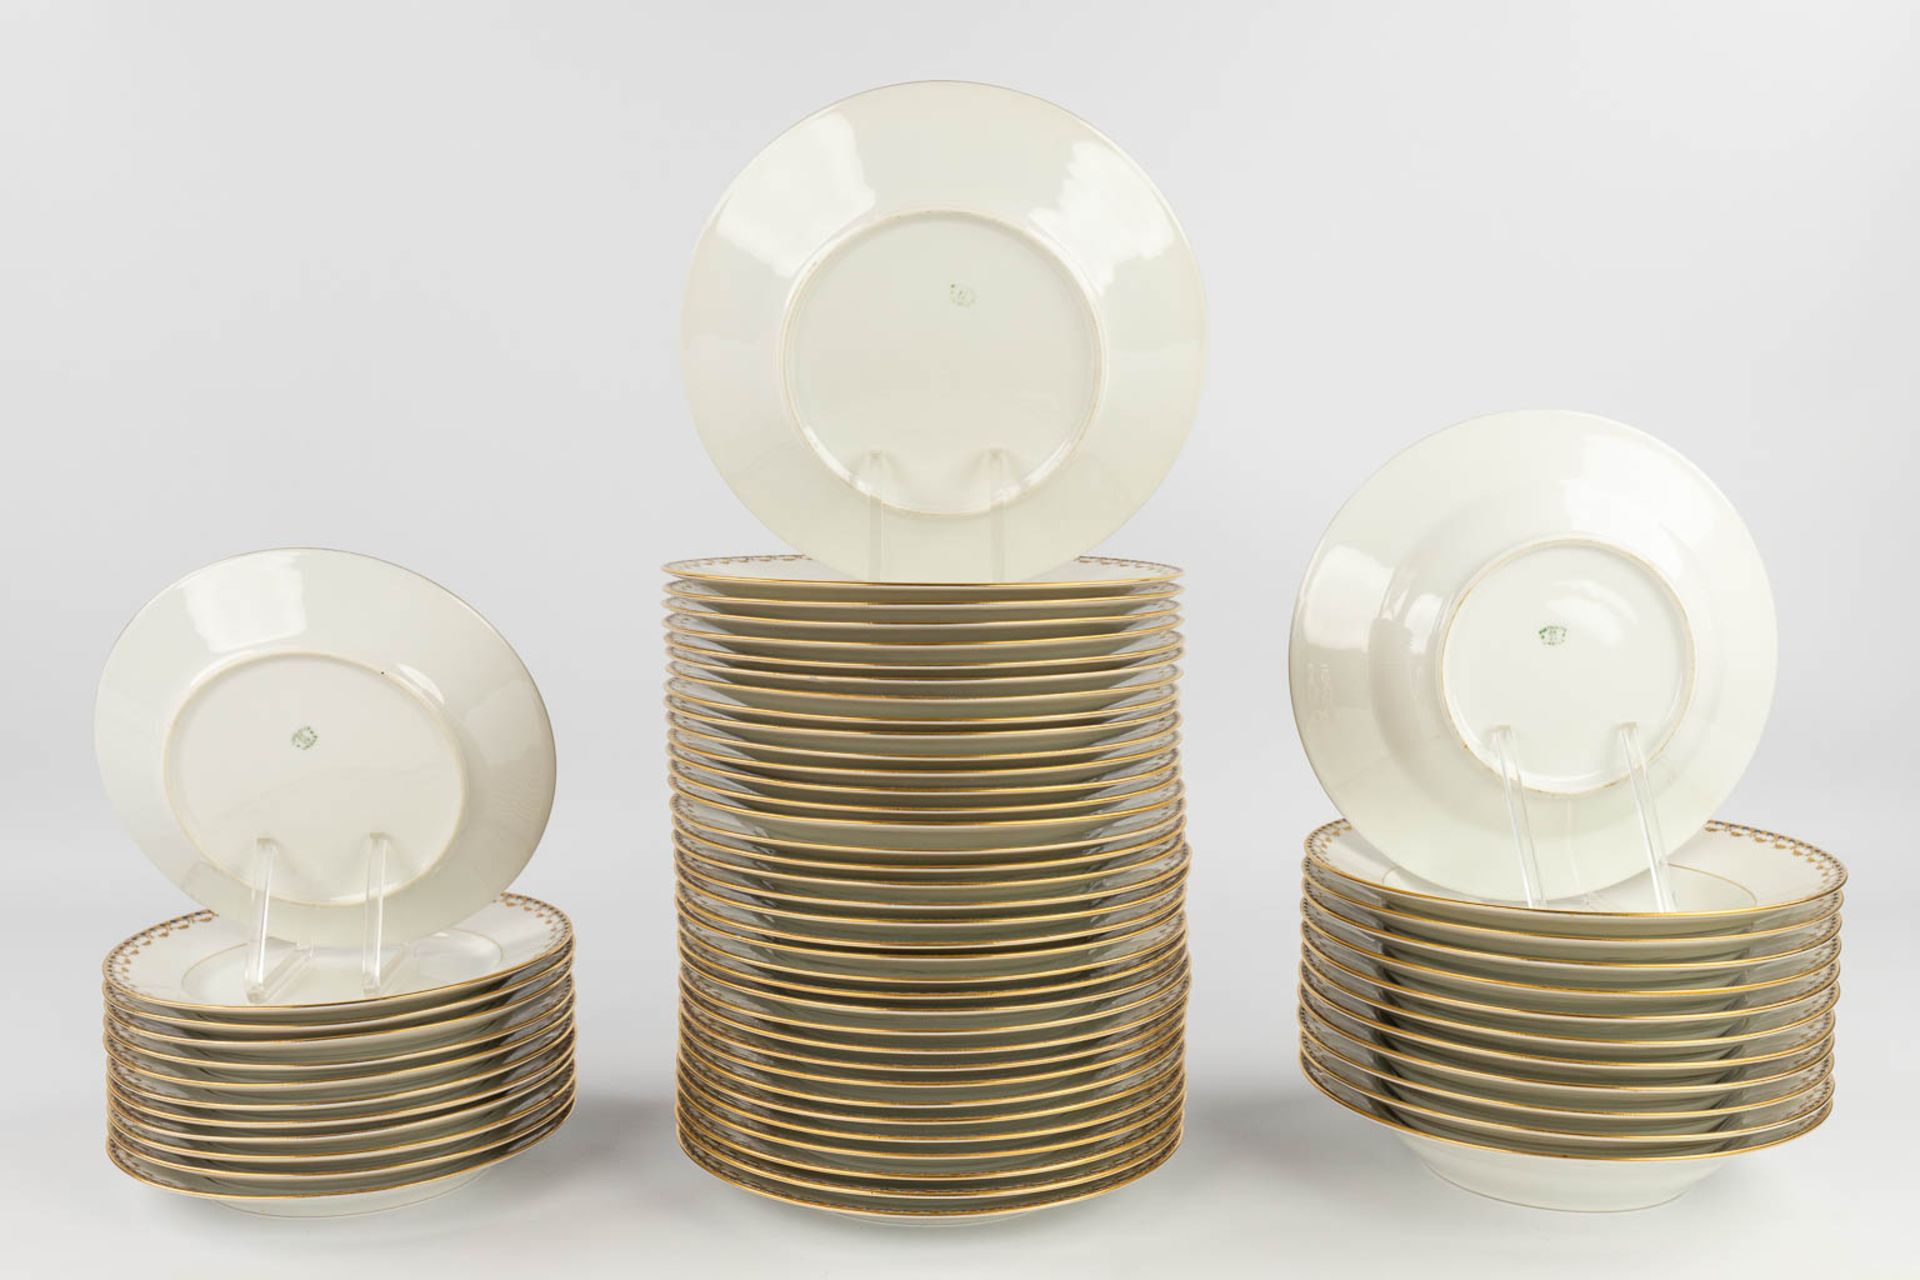 Porcelaine De Limoges, a 77 piece large dinner service. (L: 29 x W: 44 cm) - Image 4 of 20